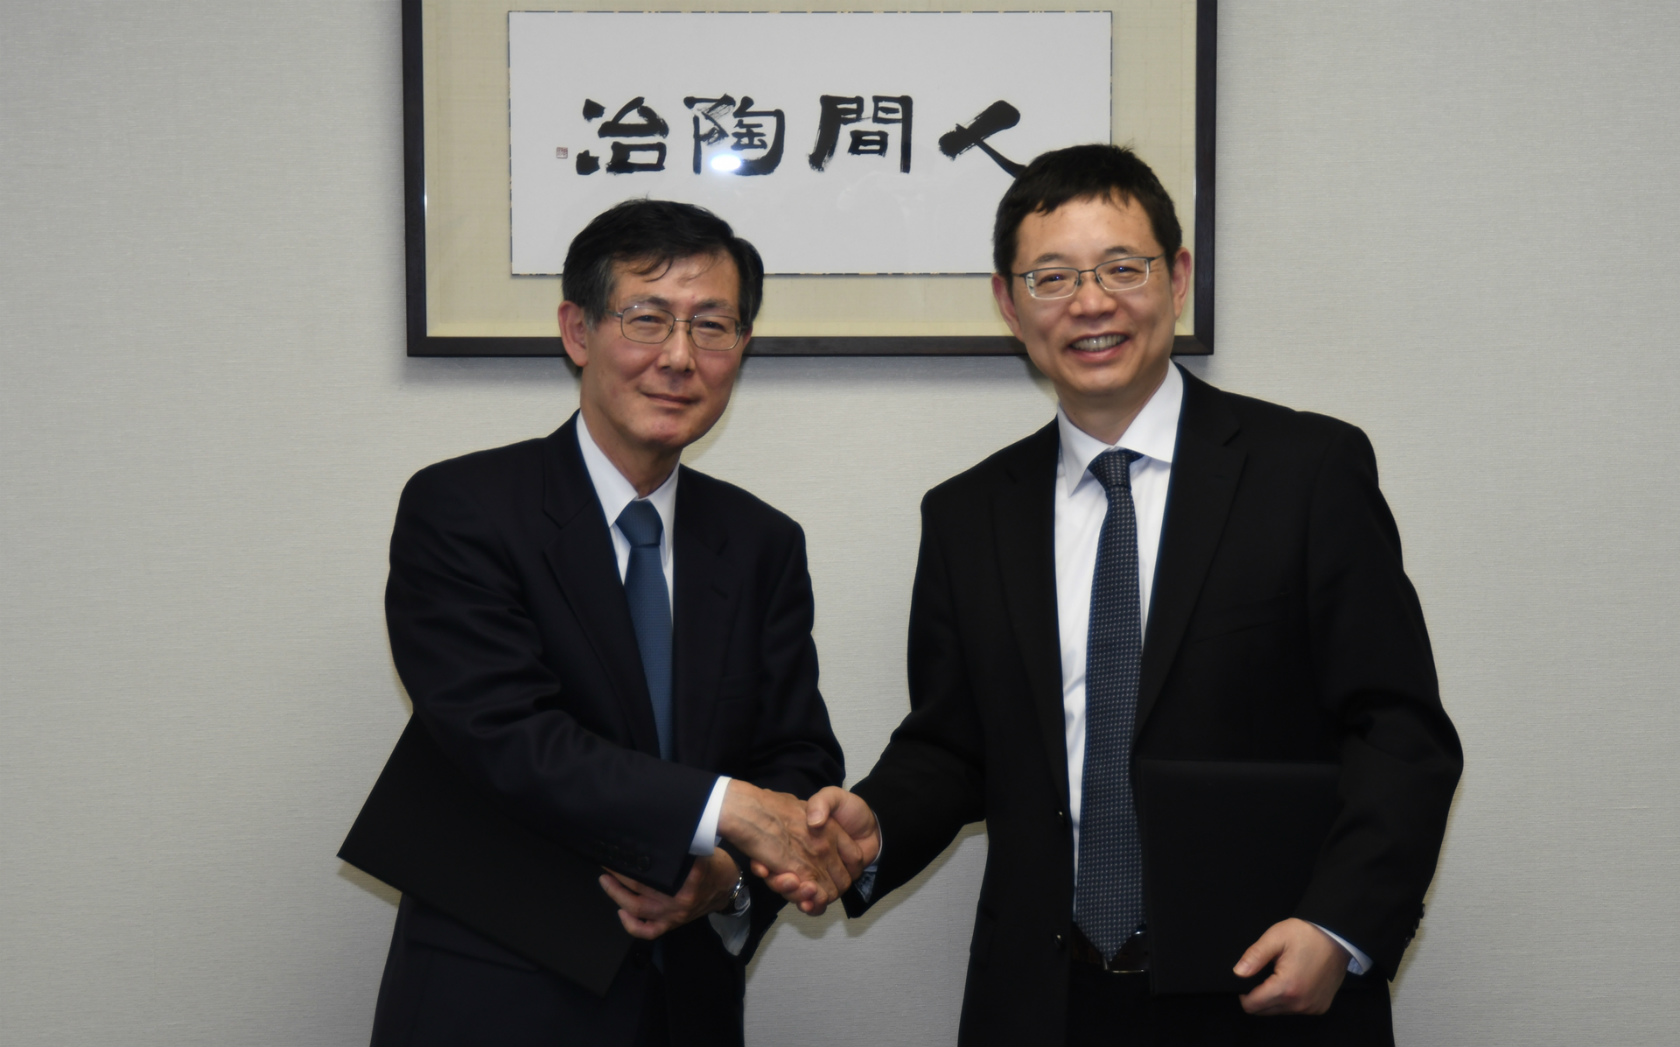 江戸川大学が中国の華中師範大学と学術協力に関する協定を締結 -- 国際化と情報化を推進